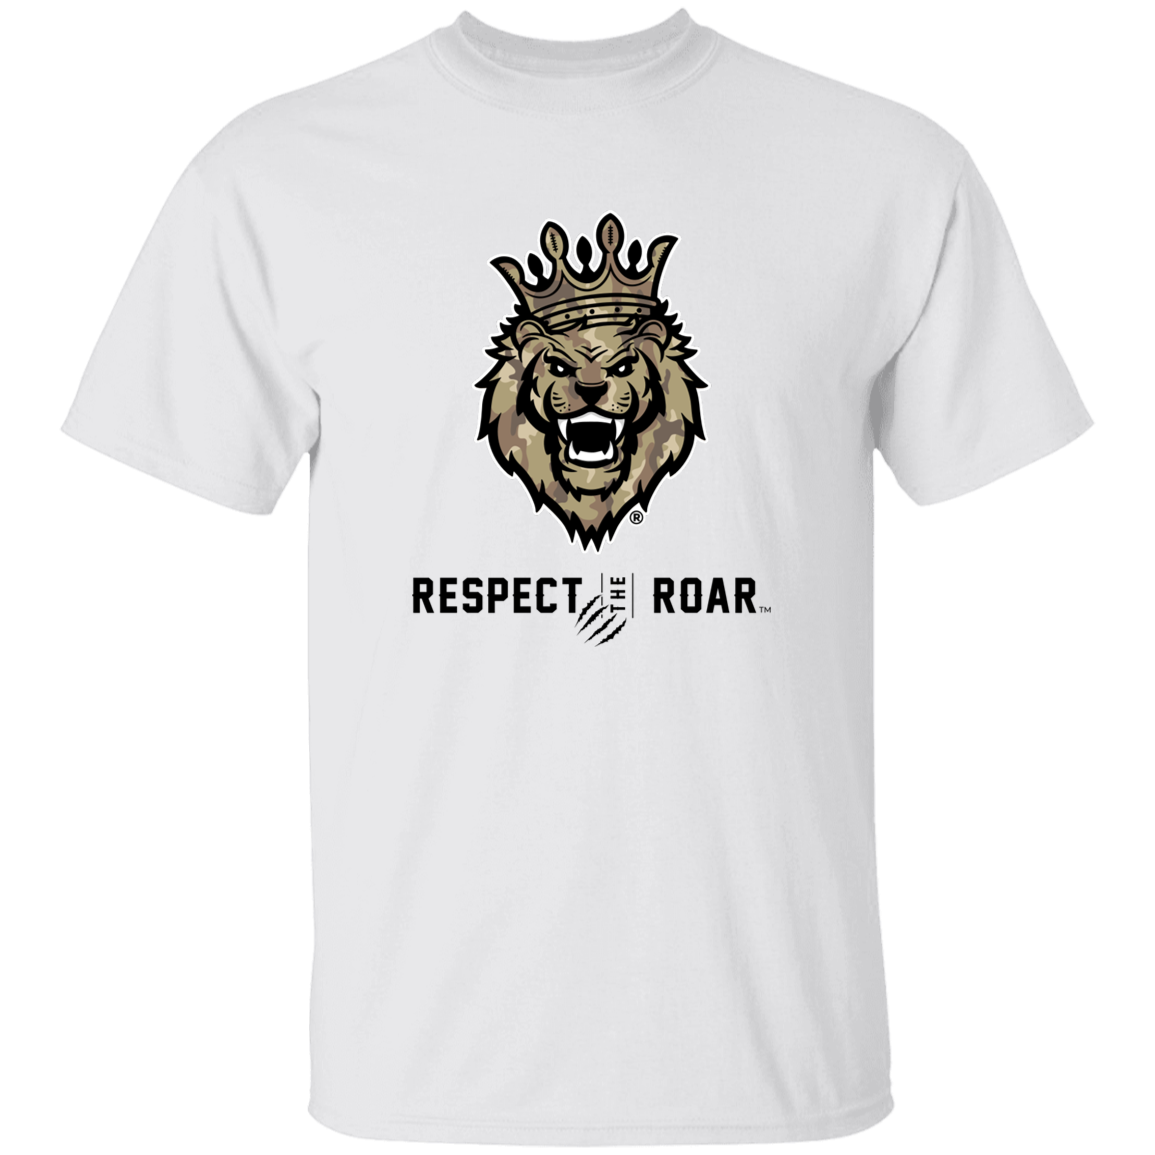 Respect The Roar (Tan) - G500 5.3 oz. T-Shirt